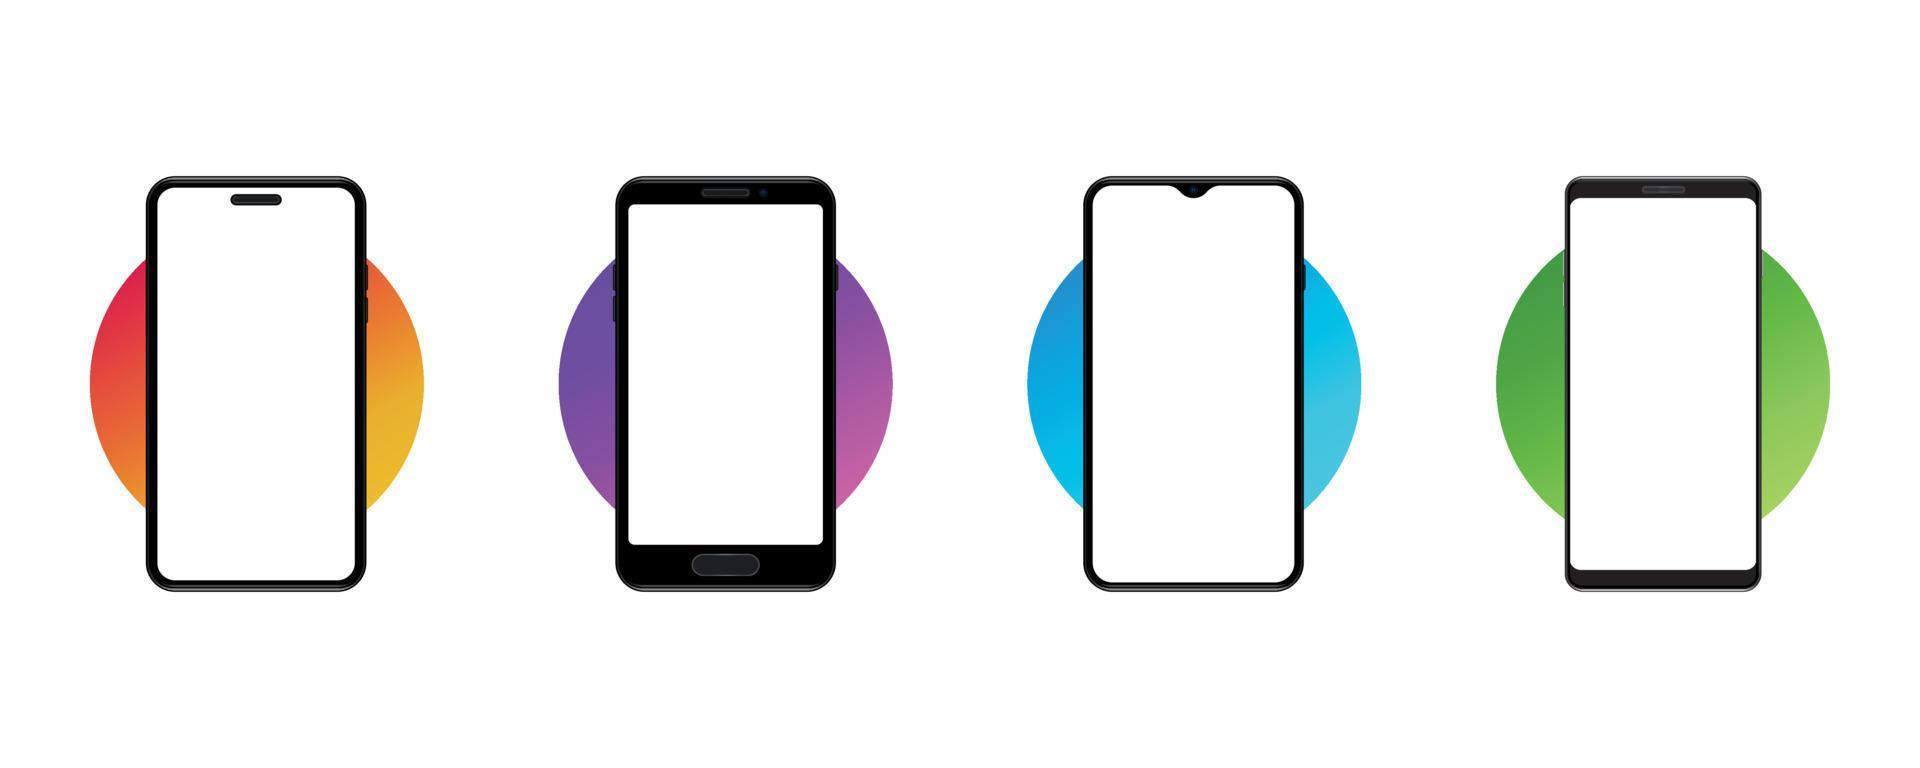 realistiska smartphone mockup-enheter på färgad cirkelbakgrund. tom, tom skärm. vektor